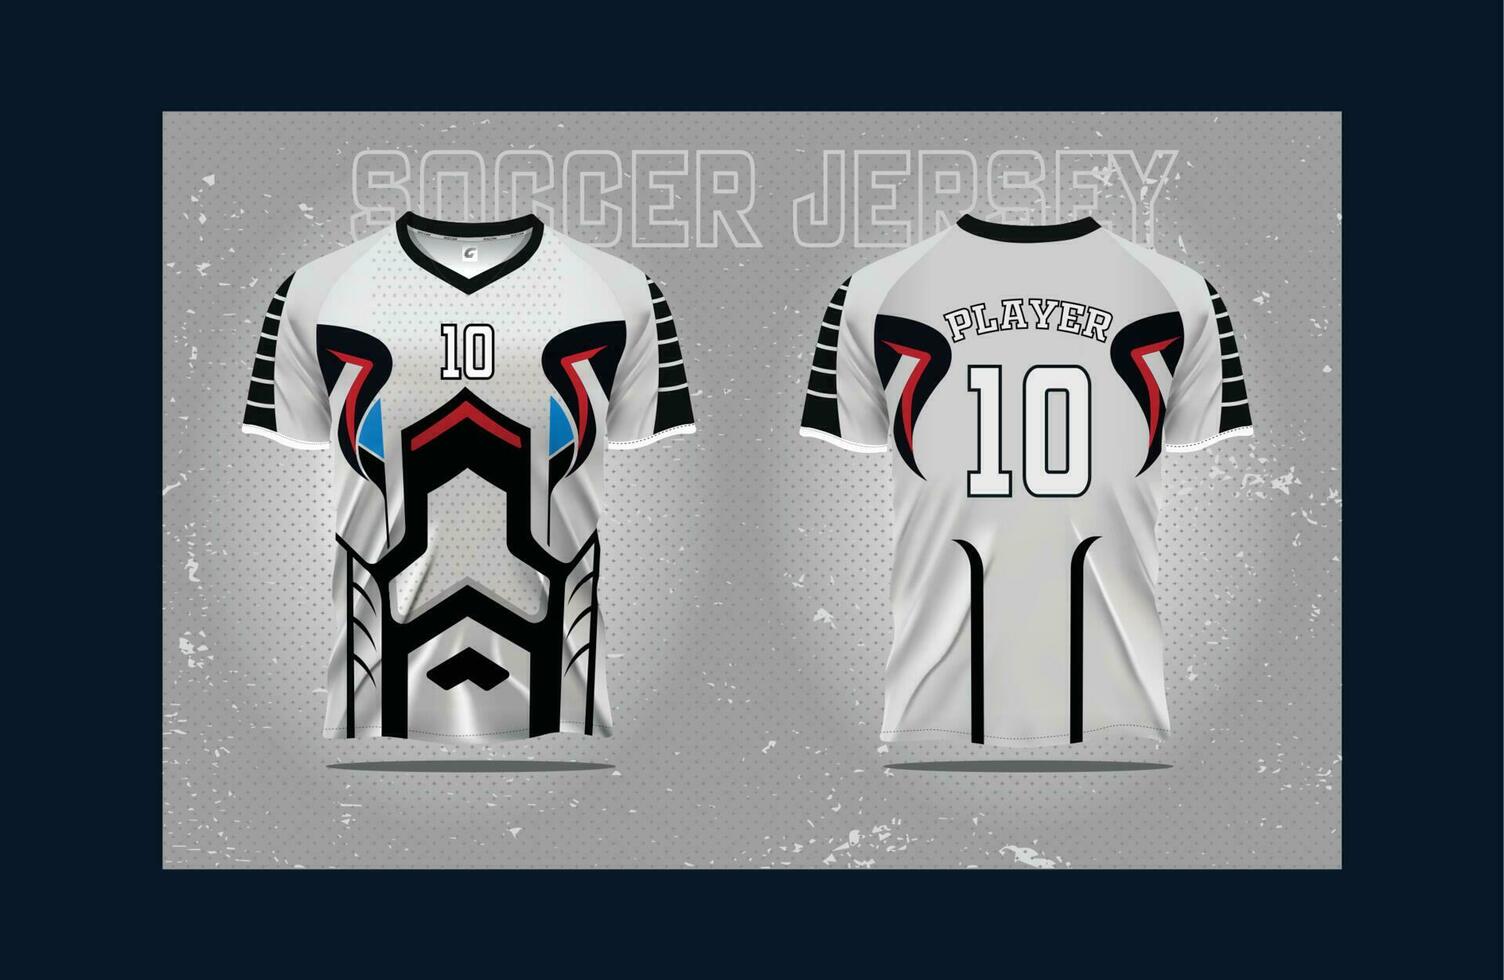 modern voetbal Jersey Amerikaans voetbal sport t overhemd ontwerp geschikt voor racen, voetbal, gaming en e sport- vector illustratie en dubbelzijdig mockup ontwerp